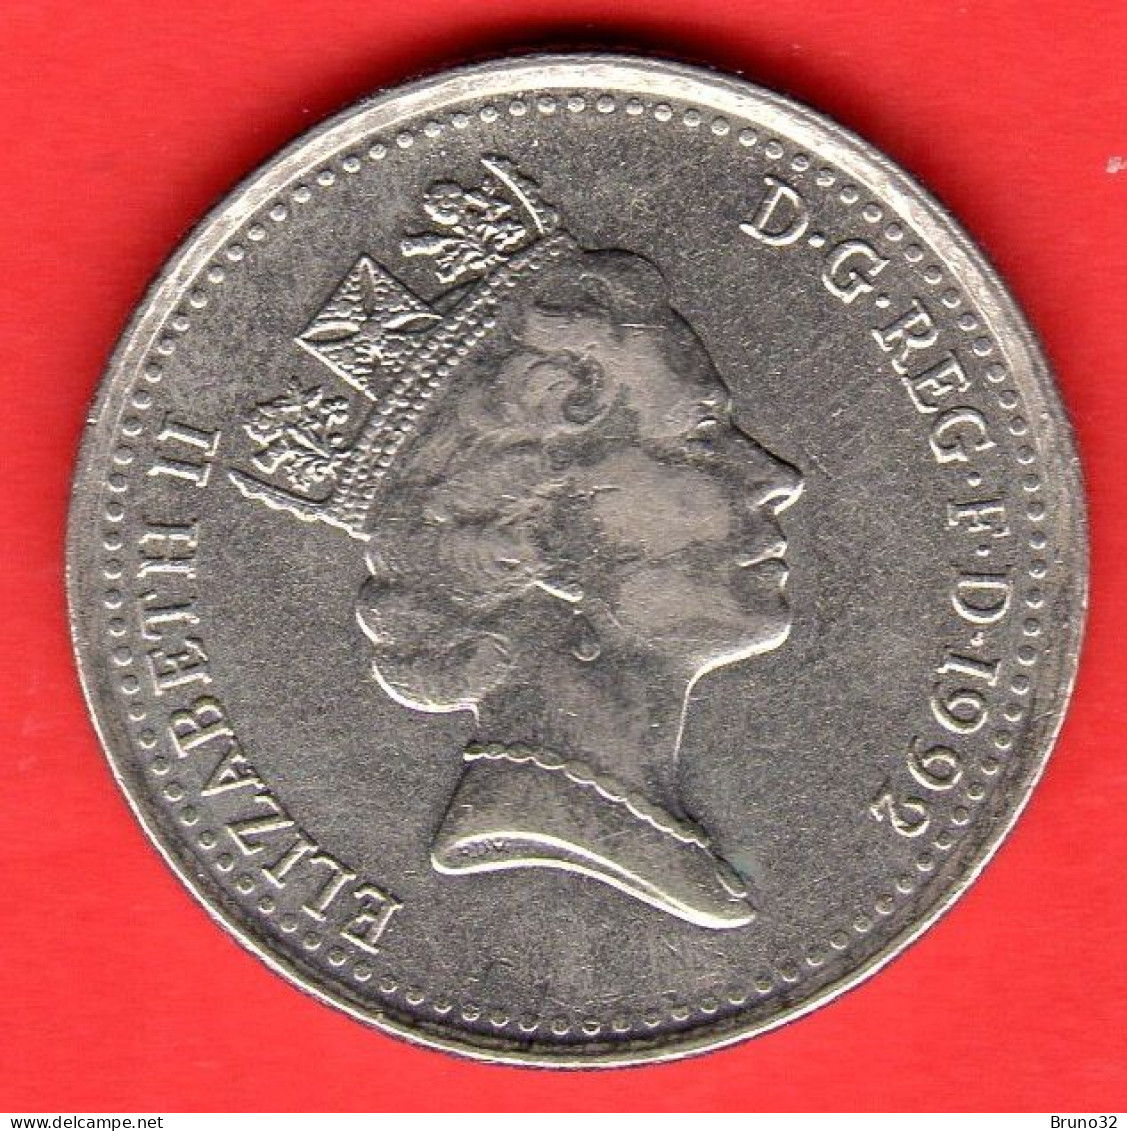 Gran Bretagna - Great Britain - GB - 10 Pence 1992 - QFDC/aUNC - Come Da Foto - 5 Pence & 5 New Pence